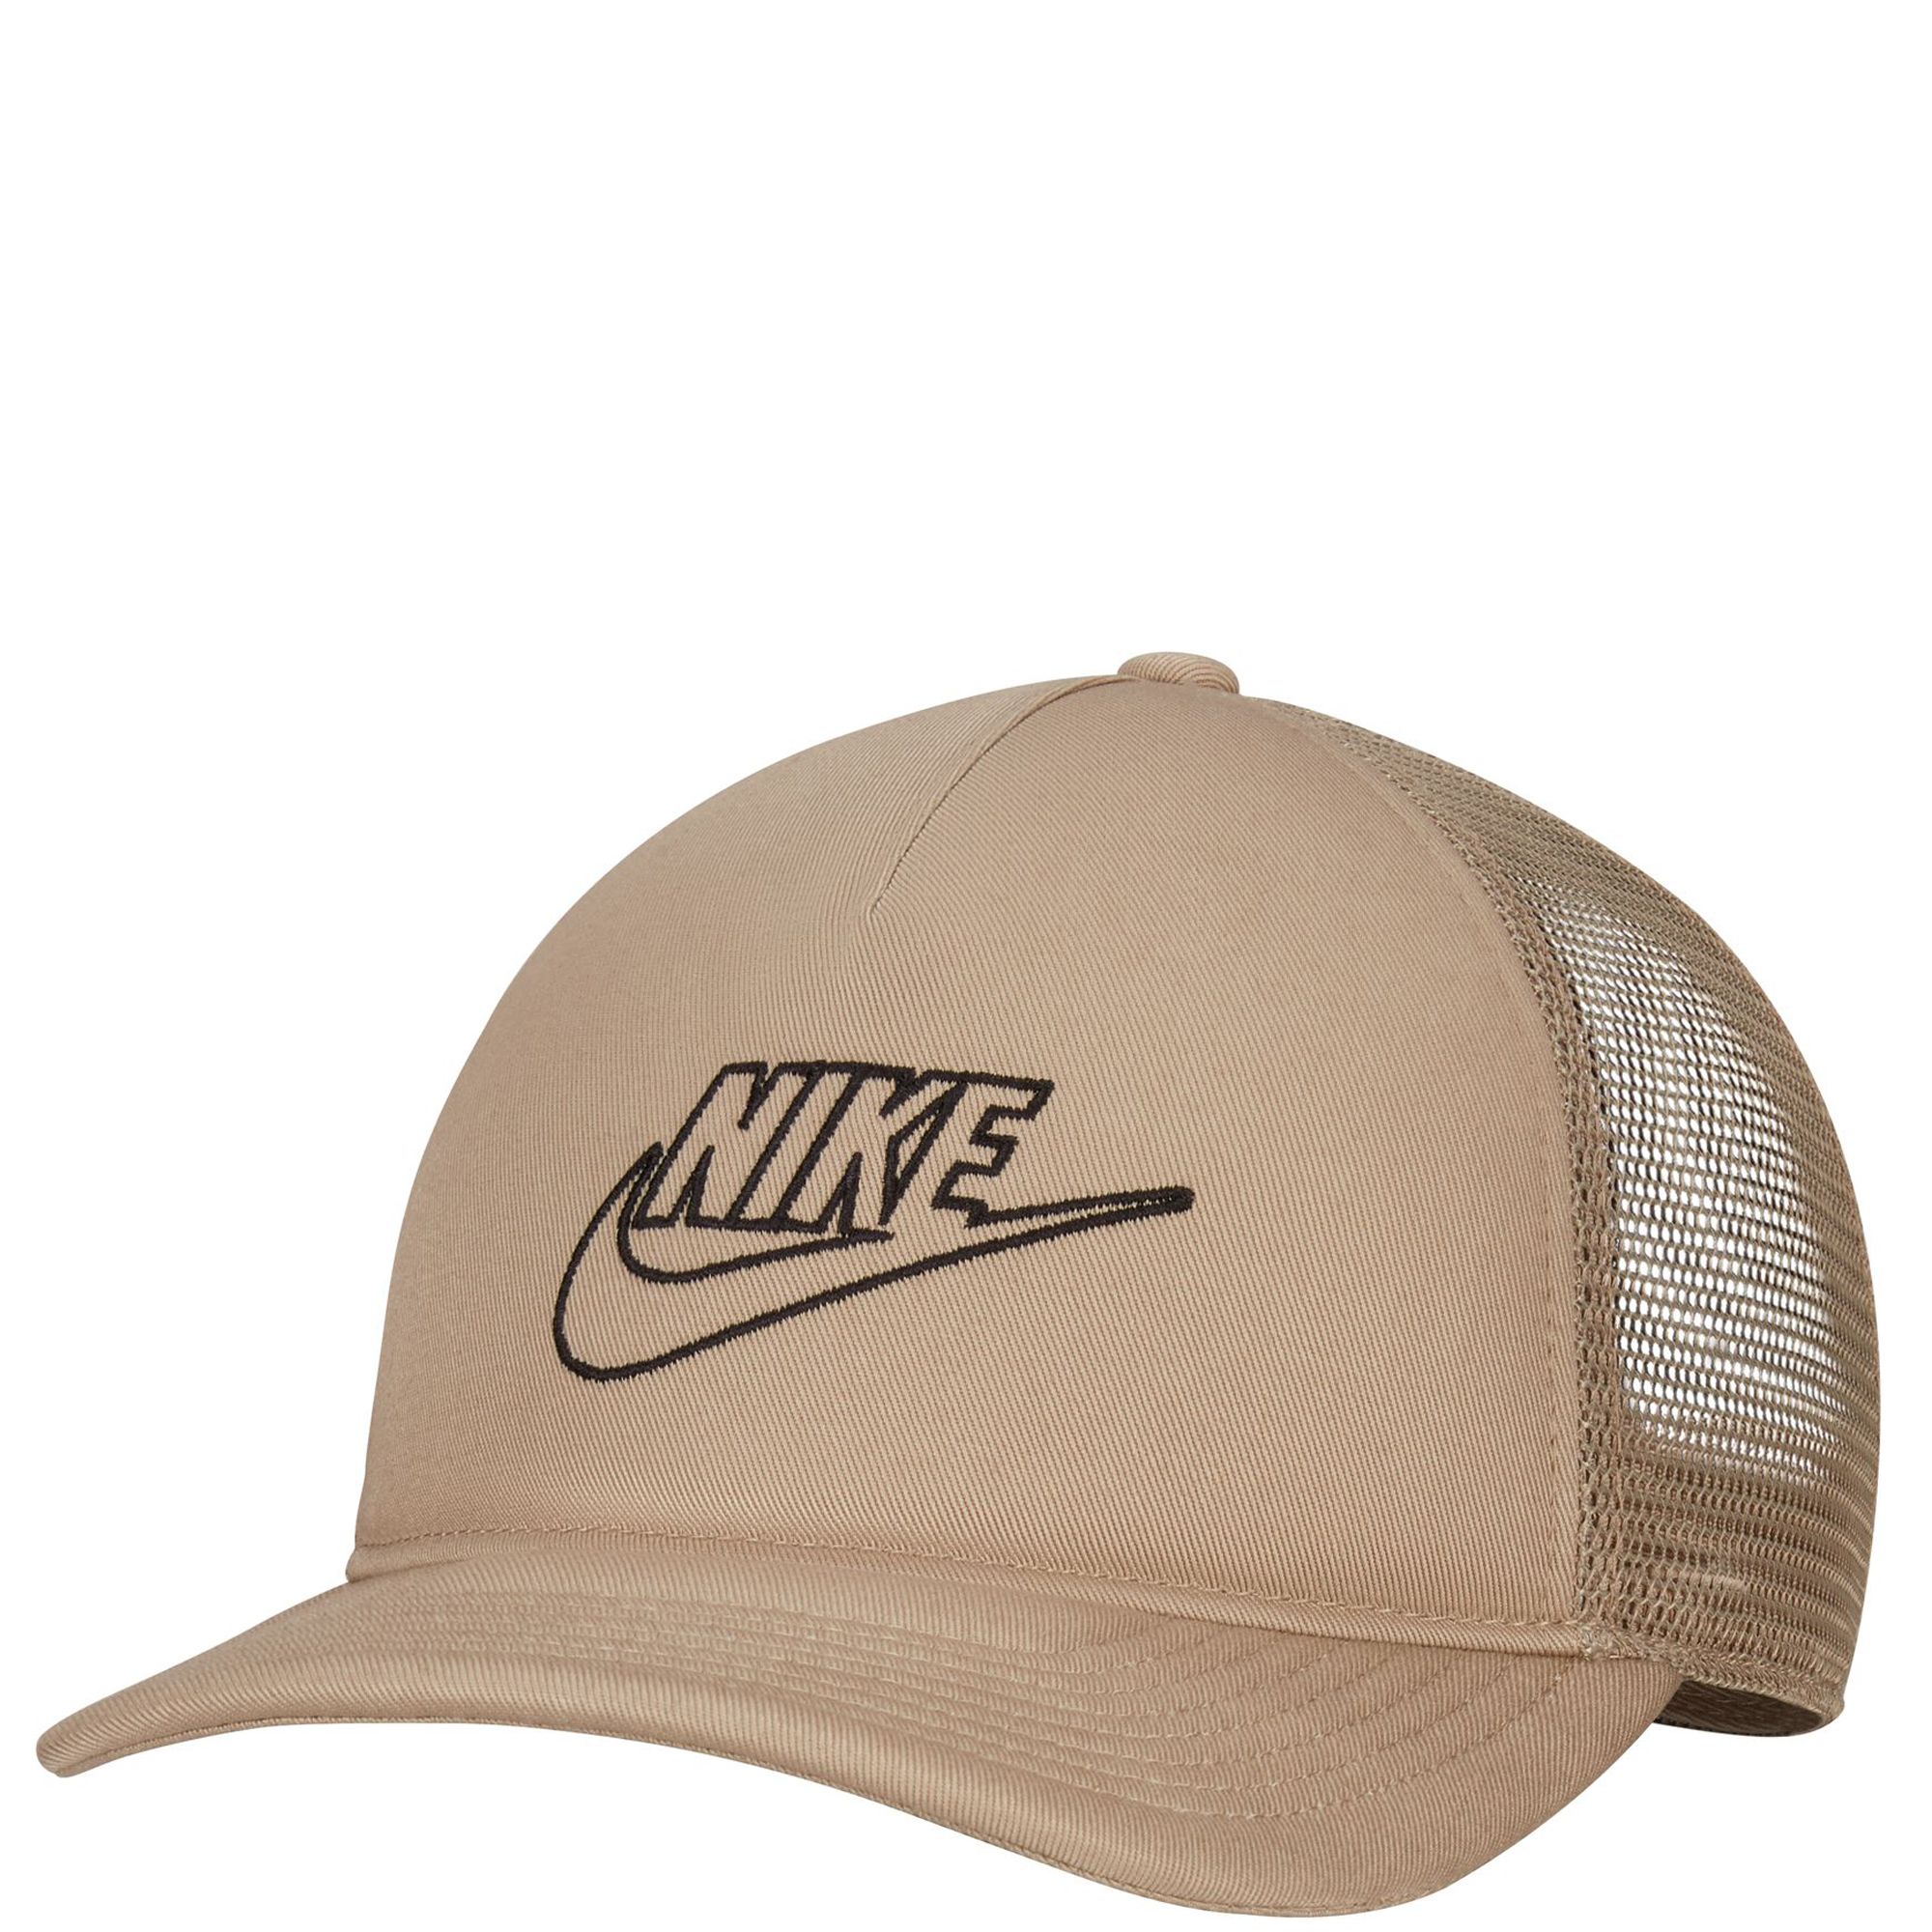 Nike Baseball Trucker Hat.